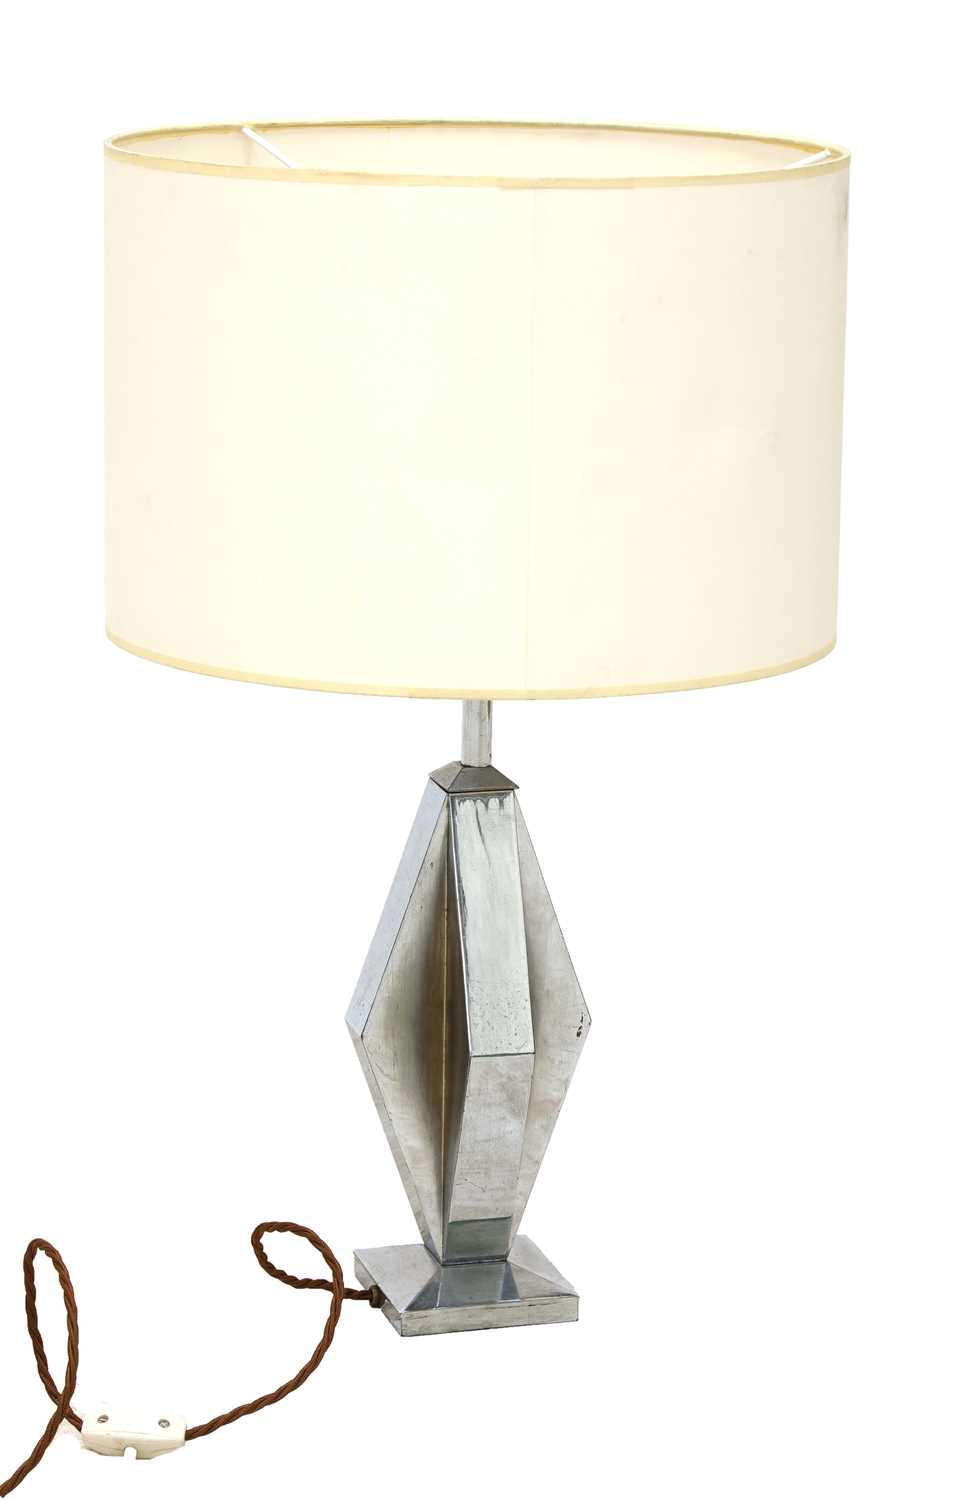 Lot 265 - An Art Deco-style chrome table lamp